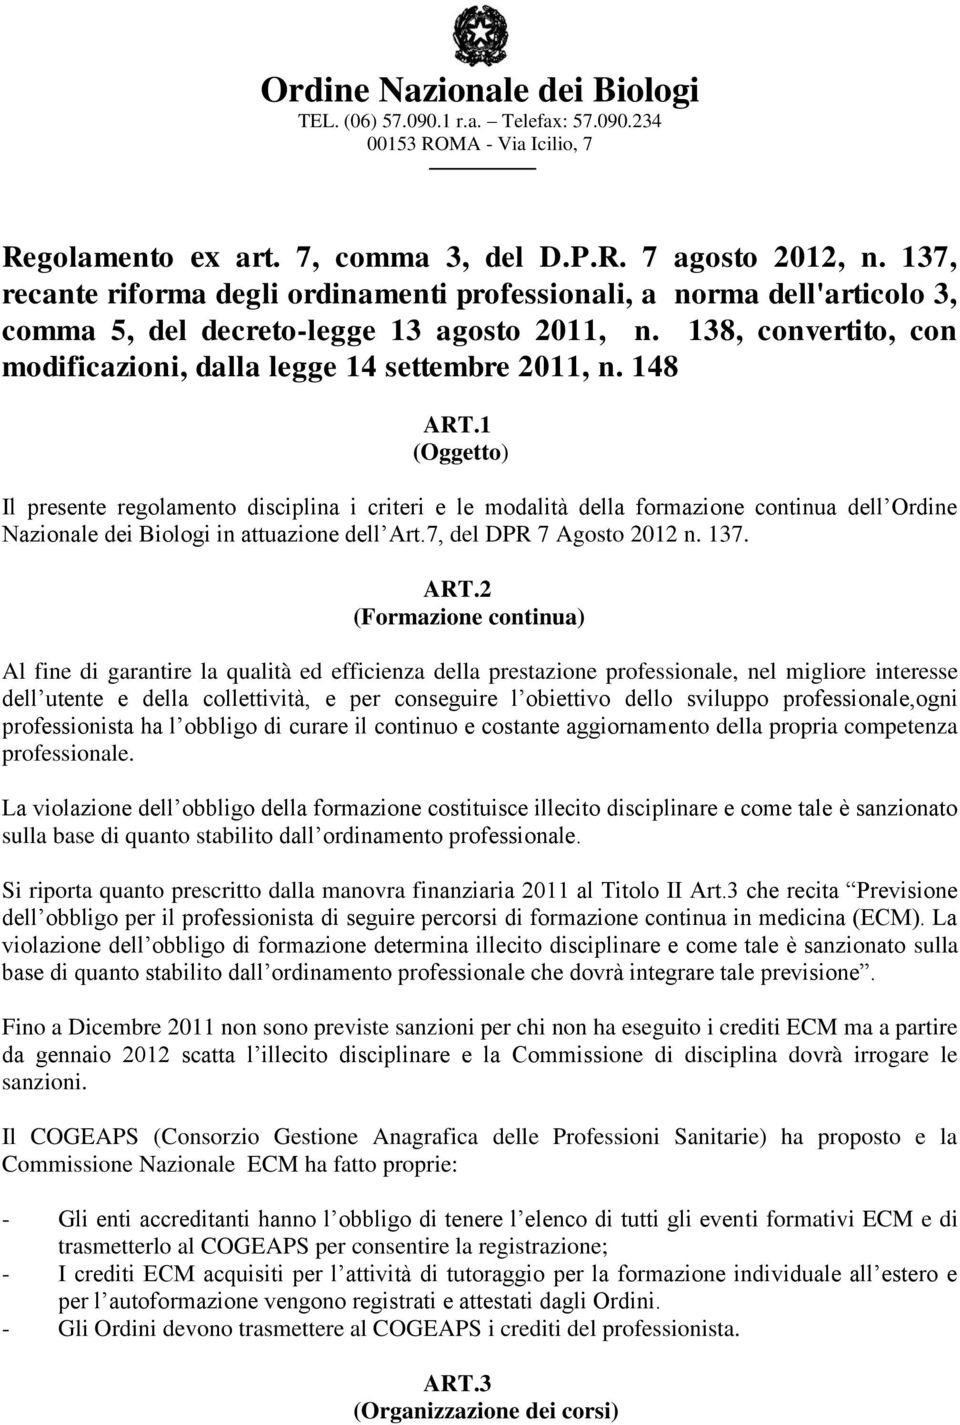 1 (Oggetto) Il presente regolamento disciplina i criteri e le modalità della formazione continua dell Ordine Nazionale dei Biologi in attuazione dell Art.7, del DPR 7 Agosto 2012 n. 137. ART.